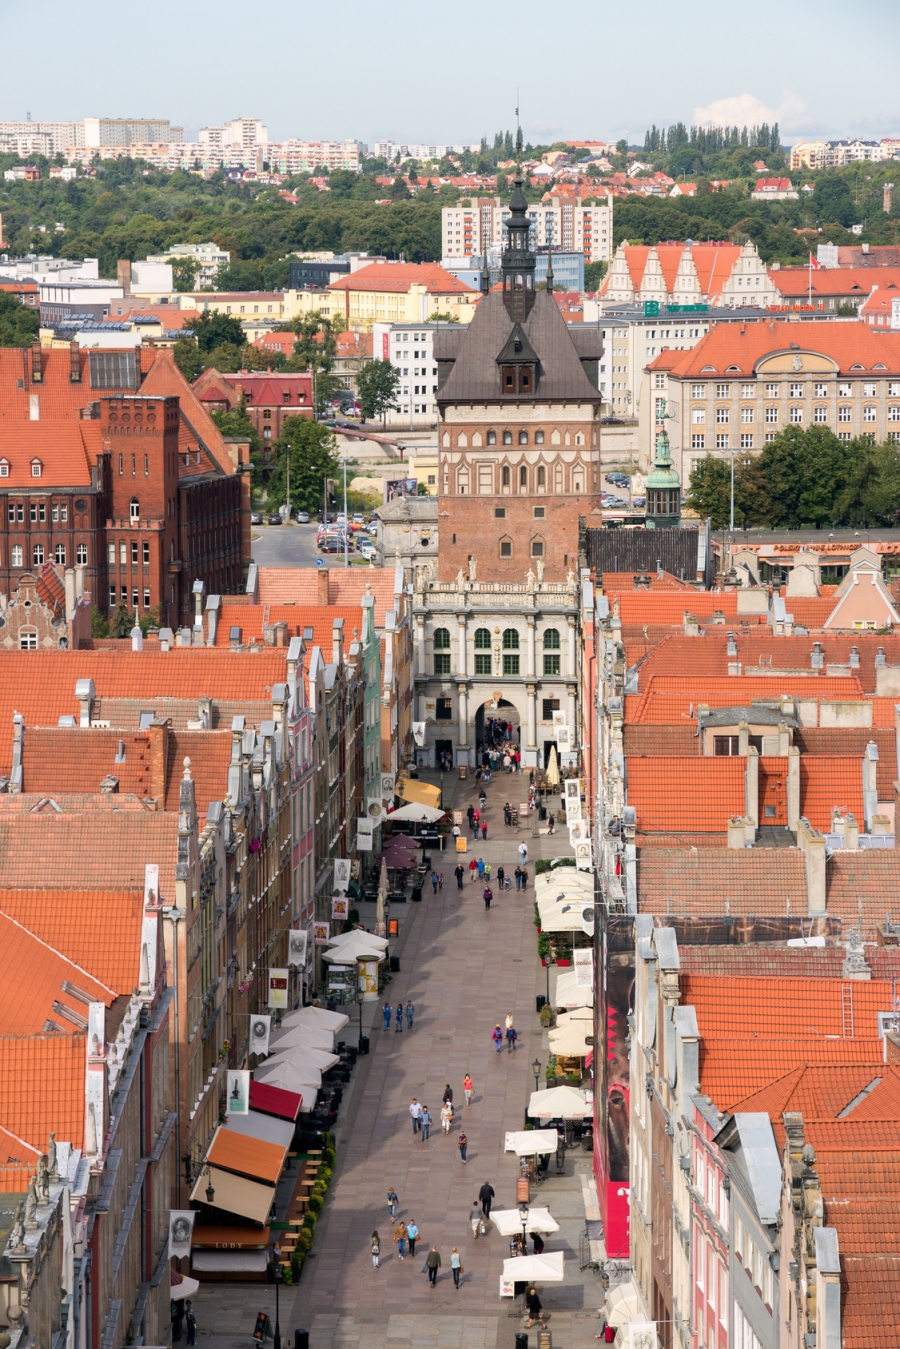 Wenn man grenznah wohnt, lohnt es sich nach Polen zum Einkaufen zu fahren. Vieles ist dort günstiger.